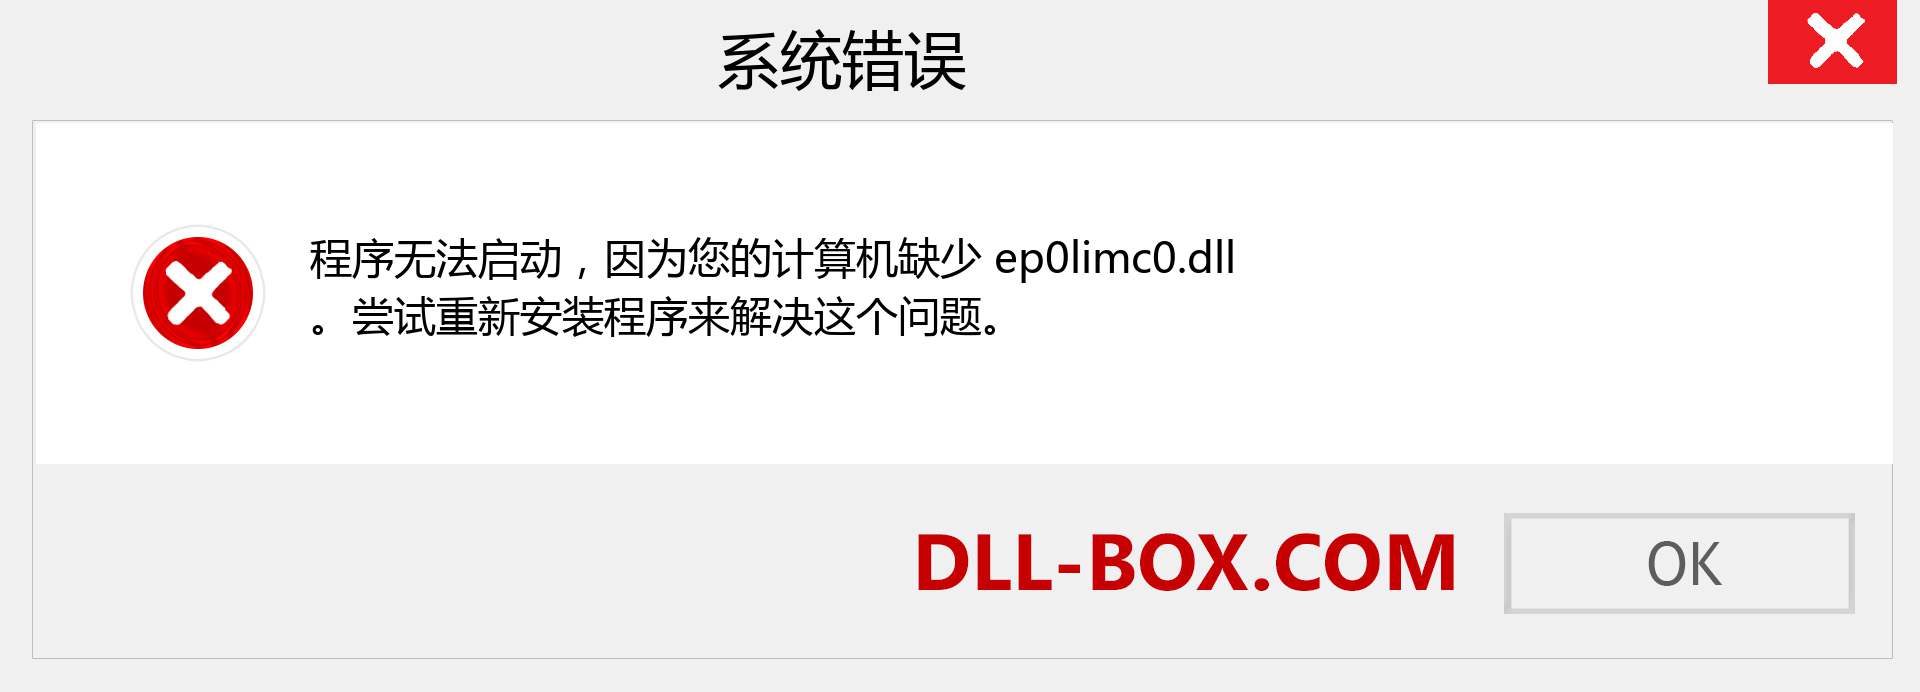 ep0limc0.dll 文件丢失？。 适用于 Windows 7、8、10 的下载 - 修复 Windows、照片、图像上的 ep0limc0 dll 丢失错误